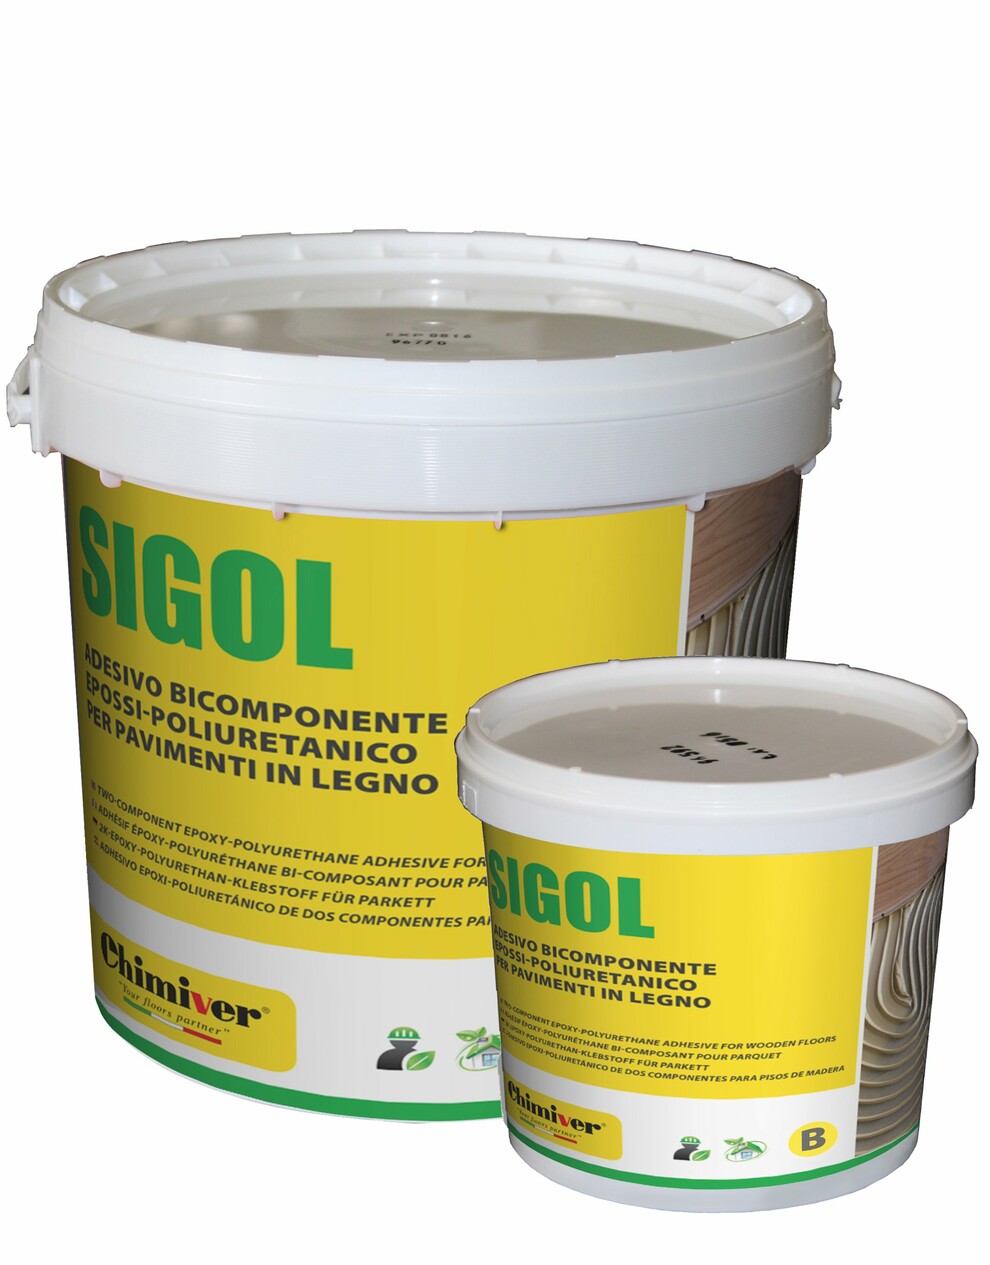 Chimiver Sigol 2K двухкомпонентный эпоксидно-полиуретановый клей | ПРО .